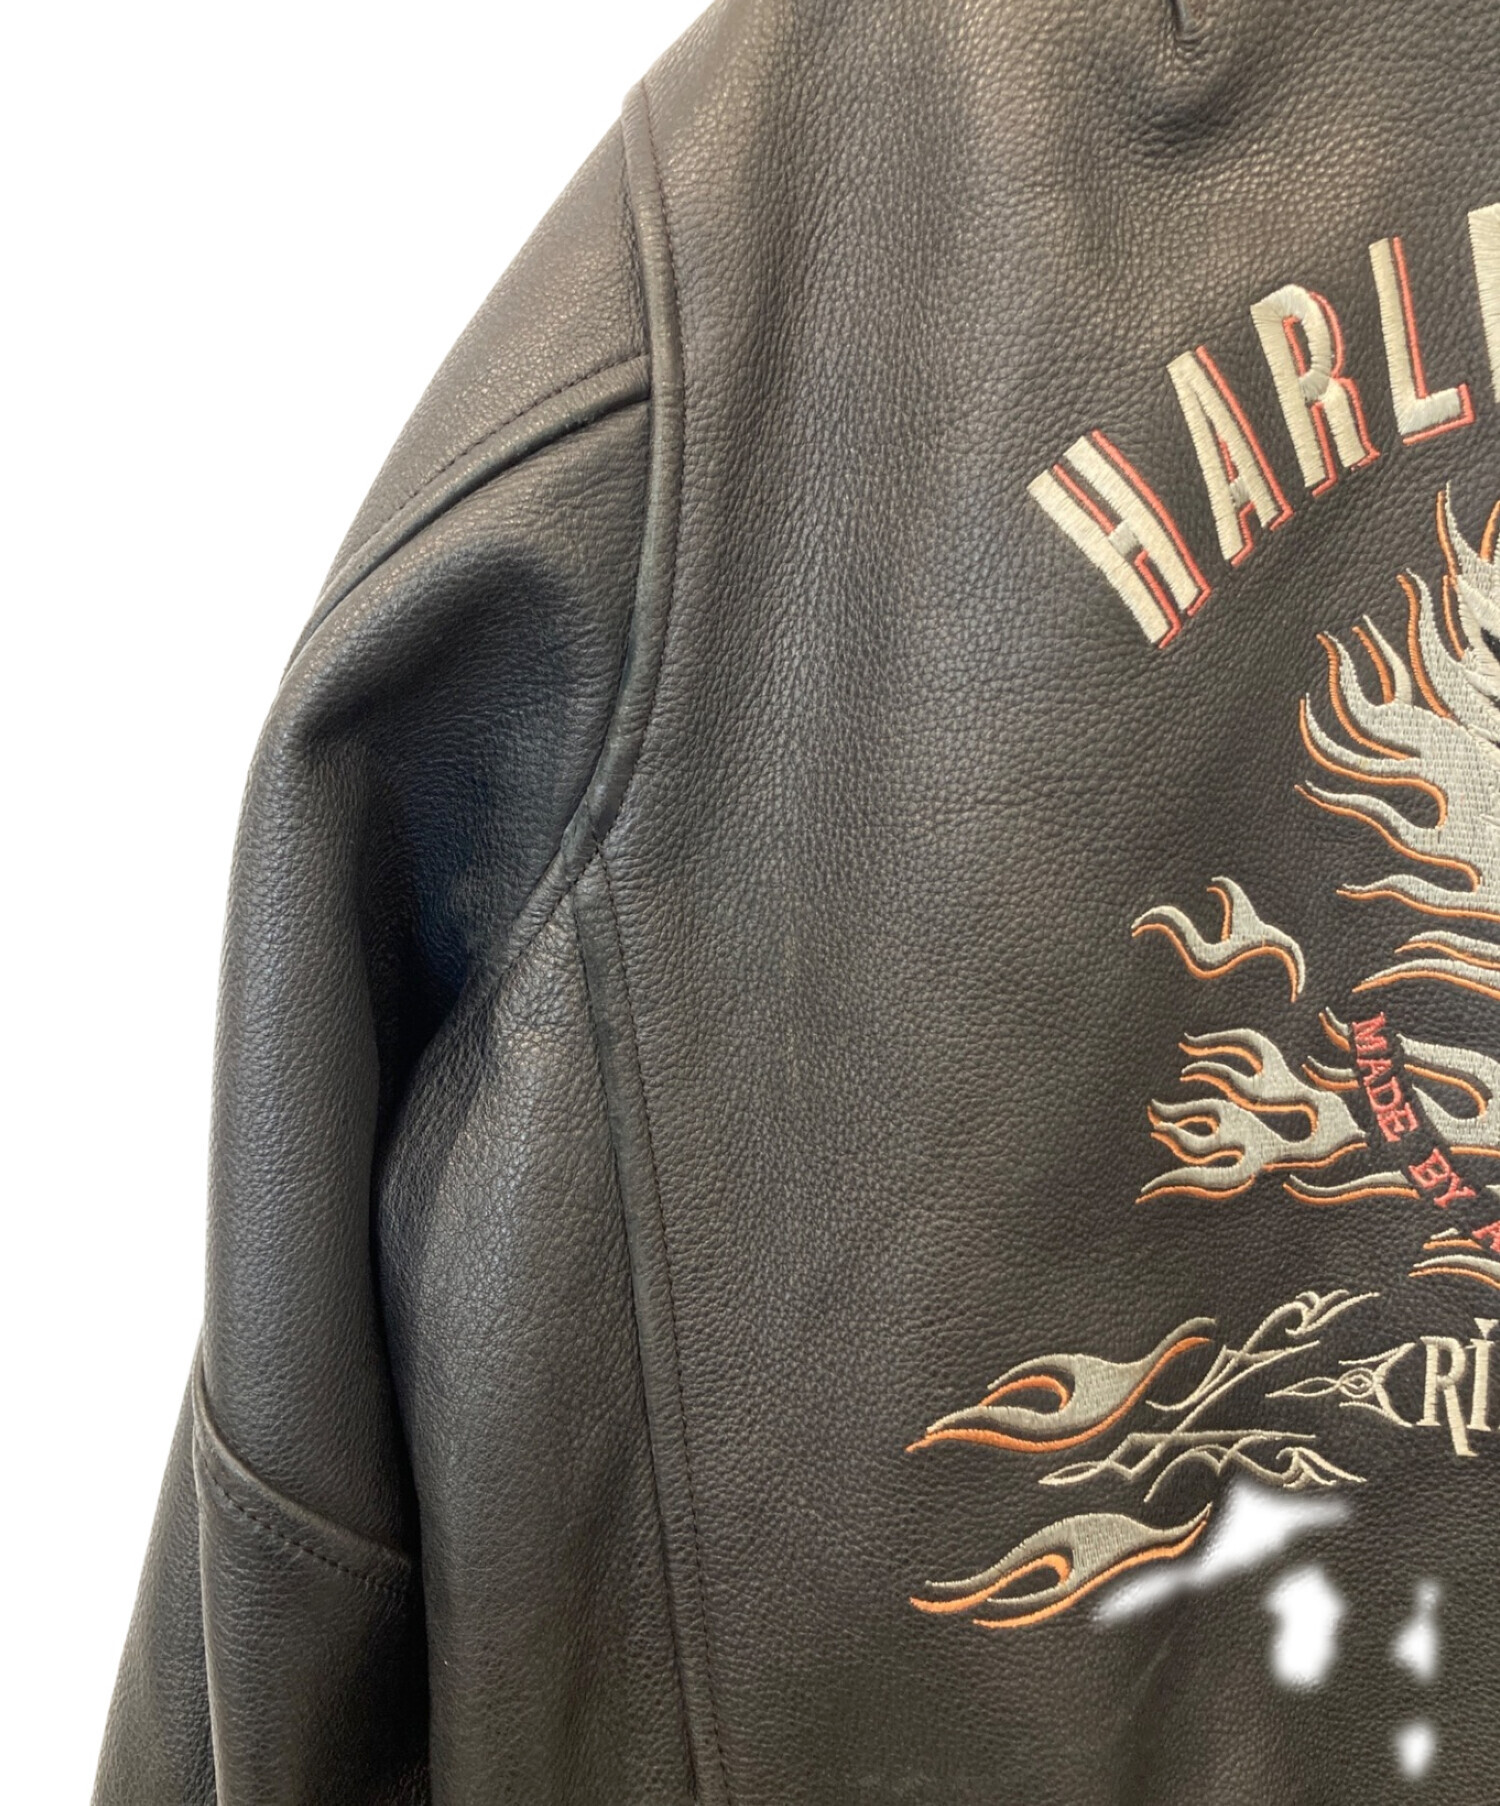 HARLEY-DAVIDSON (ハーレーダビッドソン) ファイヤーパターン刺繍レザージャケット ブラック サイズ:M